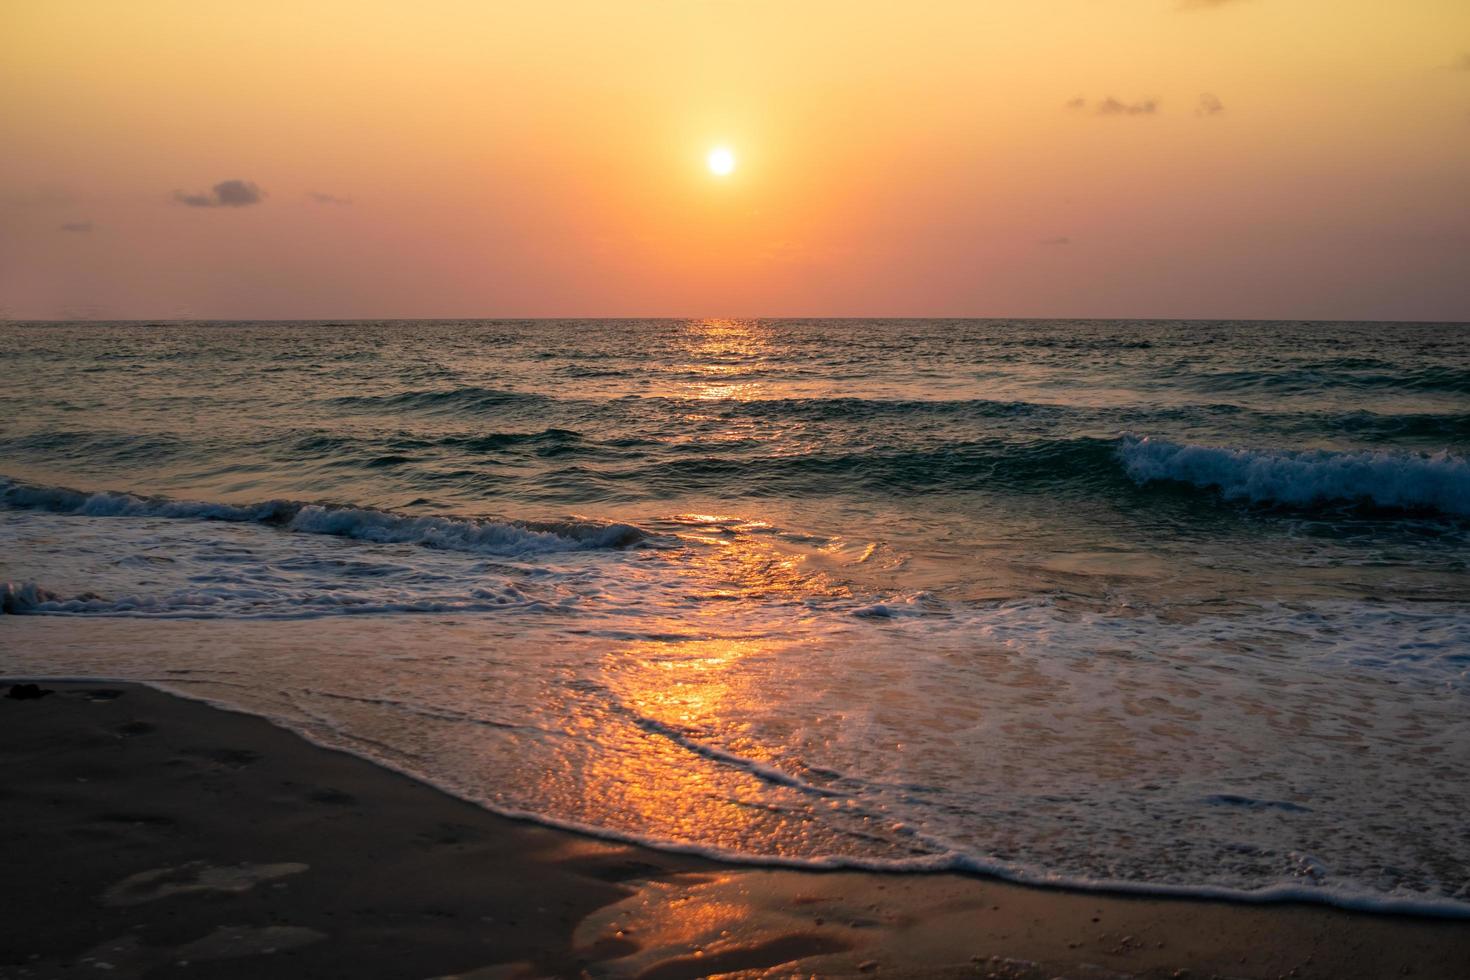 Coloridas olas del mar durante un amanecer o atardecer con el sol de fondo foto